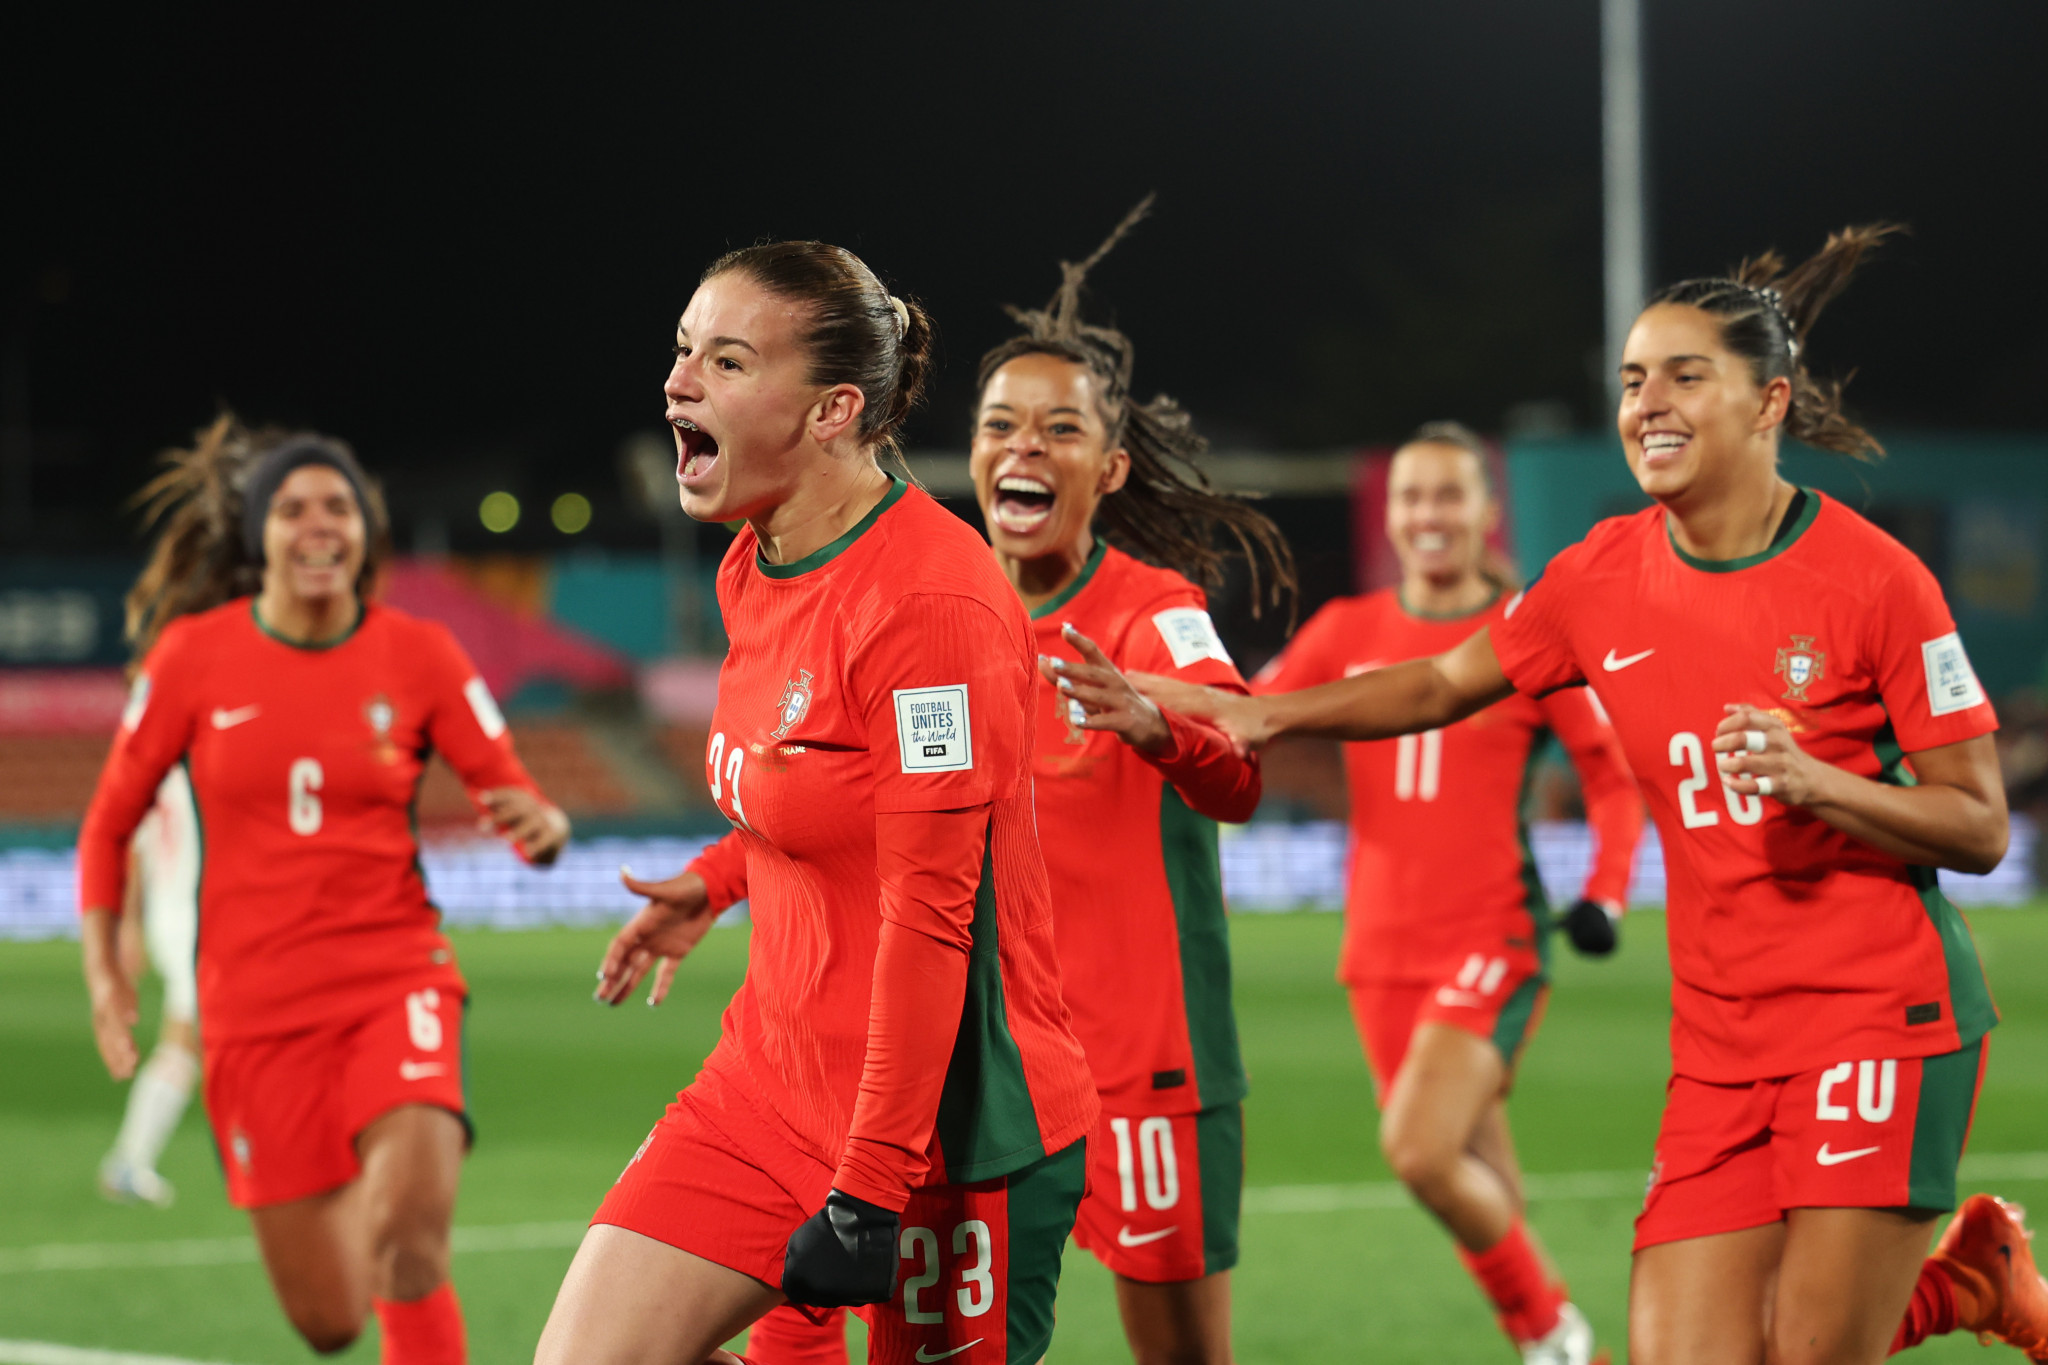 Telma Encarnação scored first as Portugal beat Vietnam 2-0 ©Getty Images
